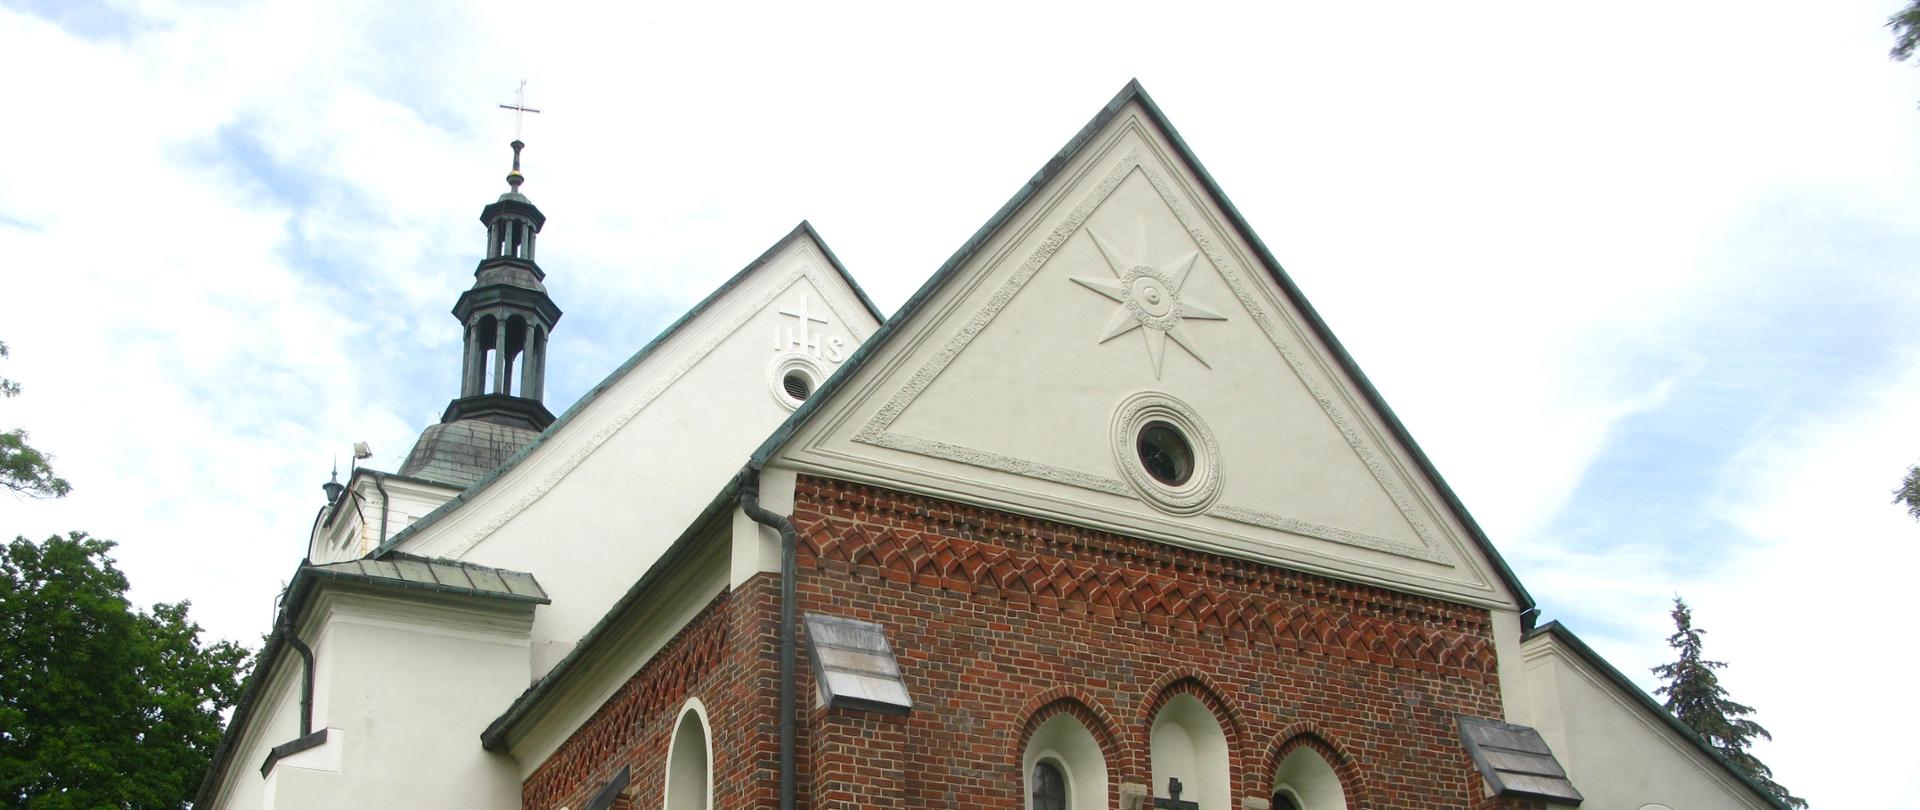 Zdjęcia przedstawia kościół św. Mikołaja w Sławkowie, otoczony drzewami, zdjęcie wykonane od strony prezbiterium. Z przodu kościoła wieżą zwieńczona krzyżem, dach pokryty blachą miedzianą, prezbiterium kościoła z cegły, reszta otynkowana. 